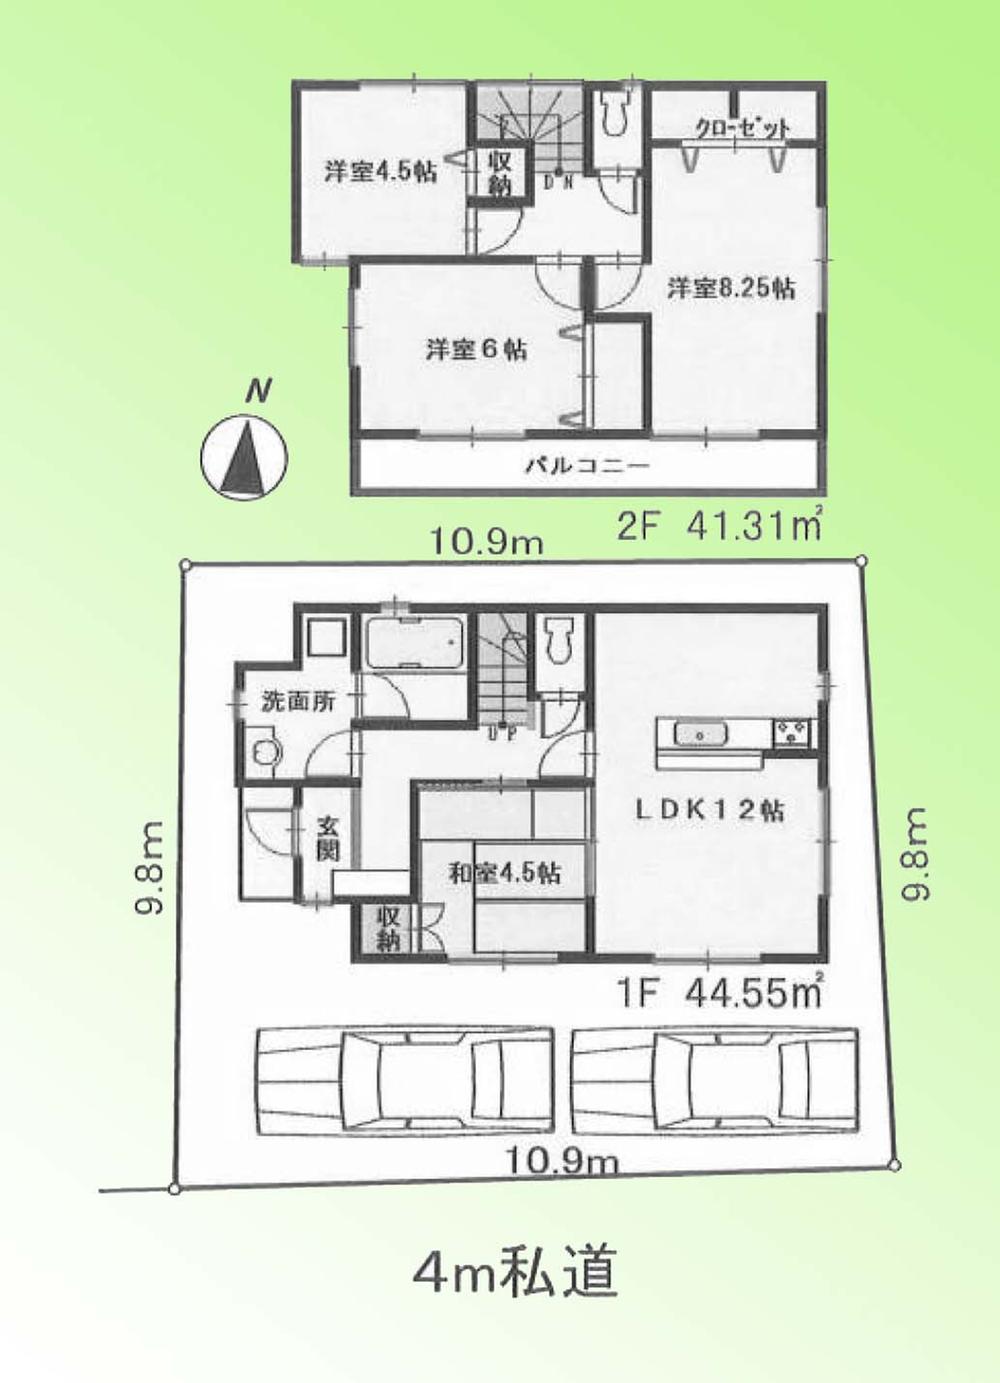 Floor plan. 19,800,000 yen, 4LDK, Land area 108.02 sq m , Building area 85.86 sq m floor plan